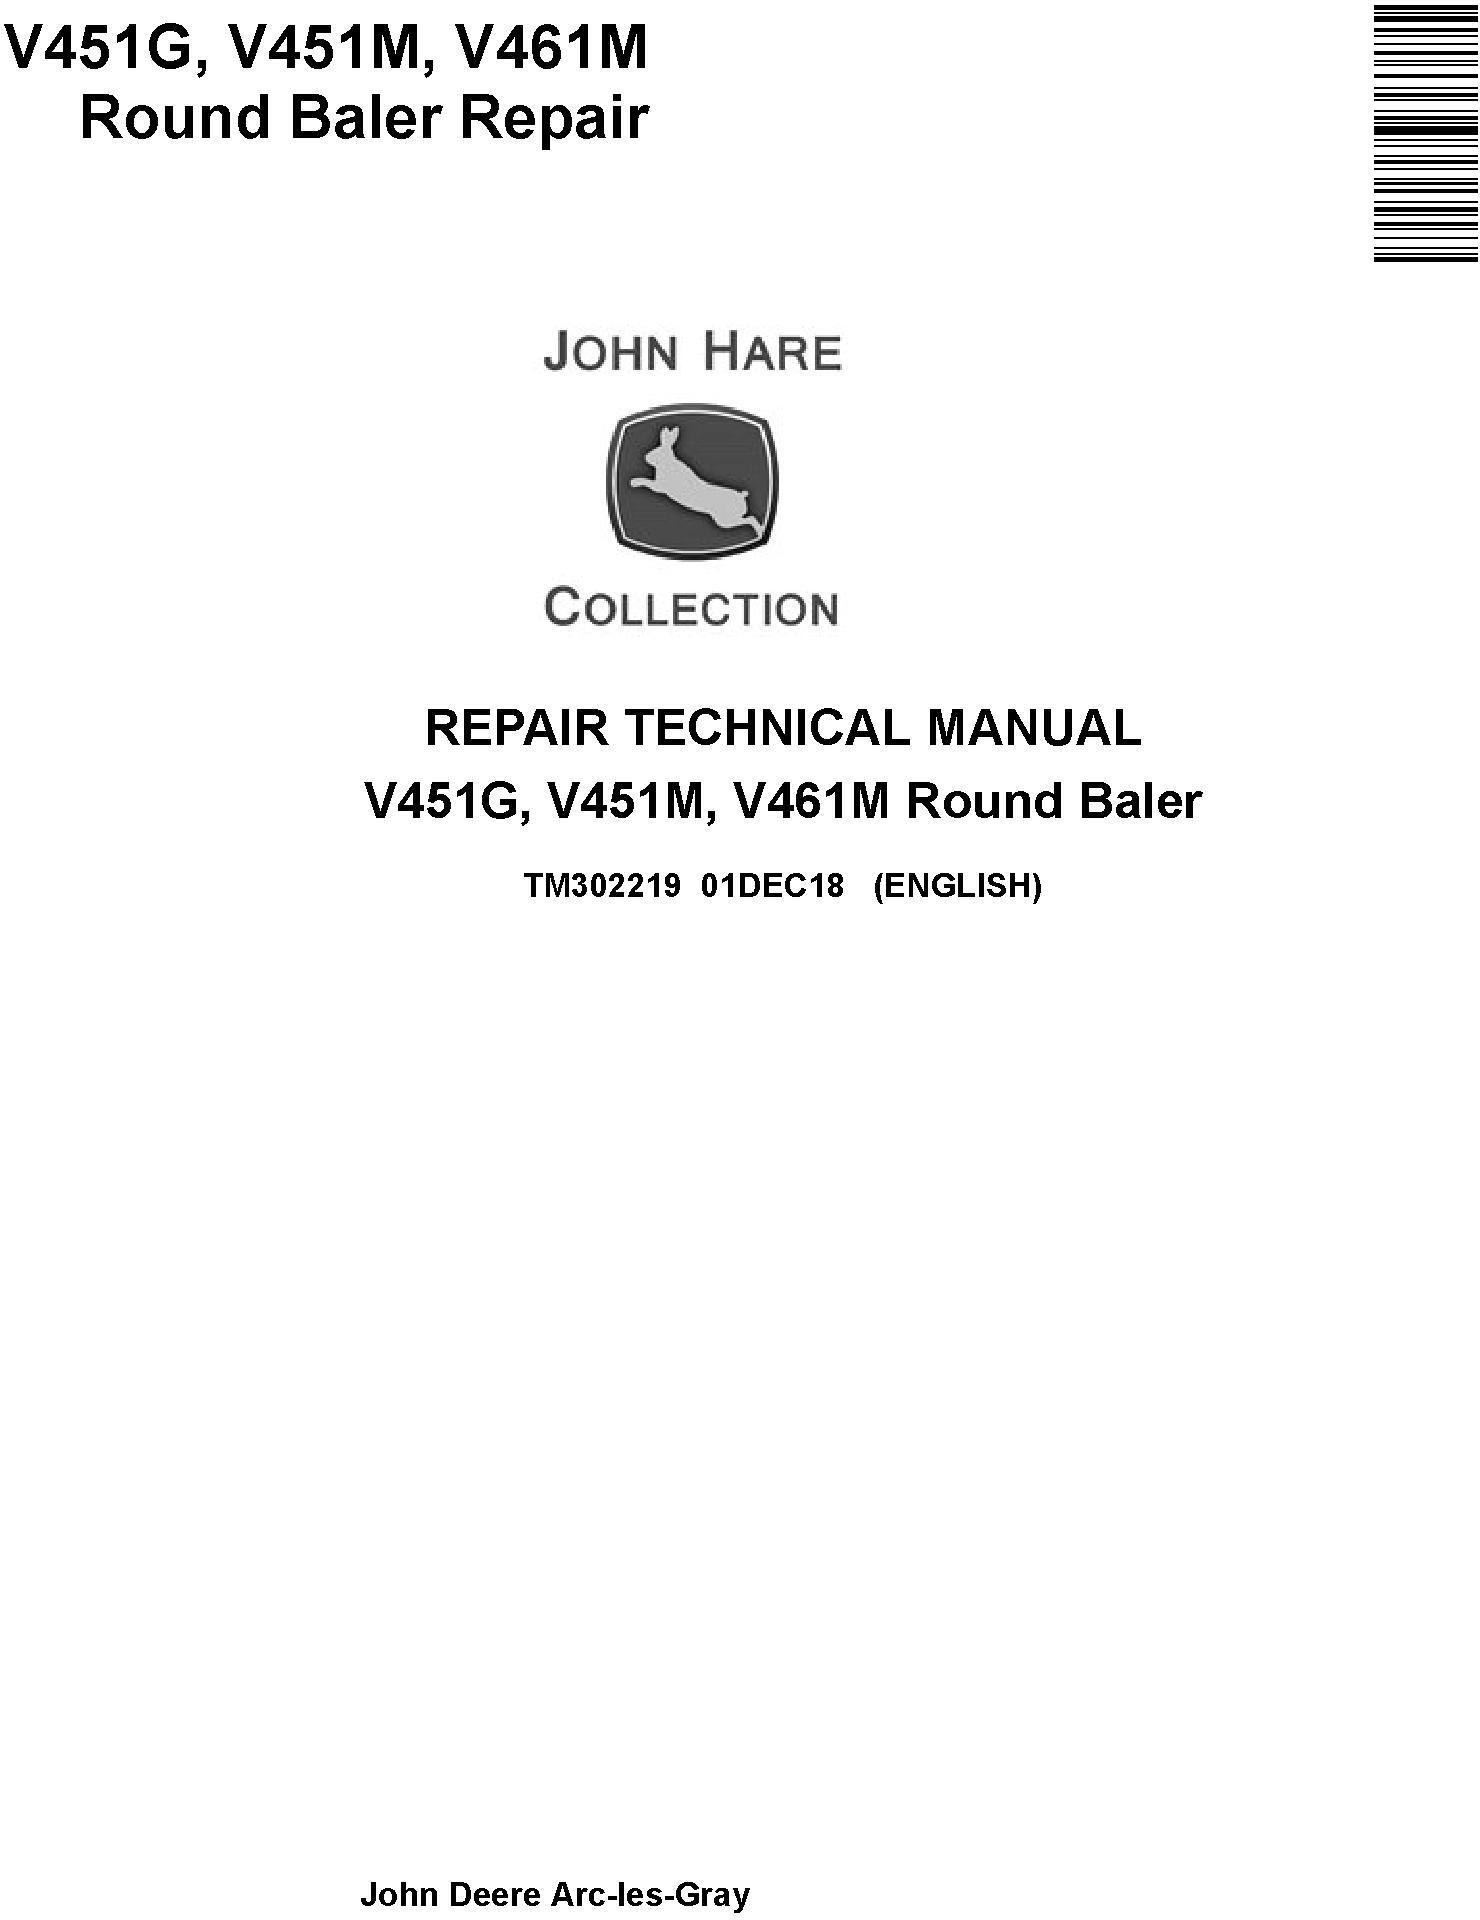 John Deere V451G, V451M, V461M Round Baler Service Repair Technical Manual (TM302219) - 19257